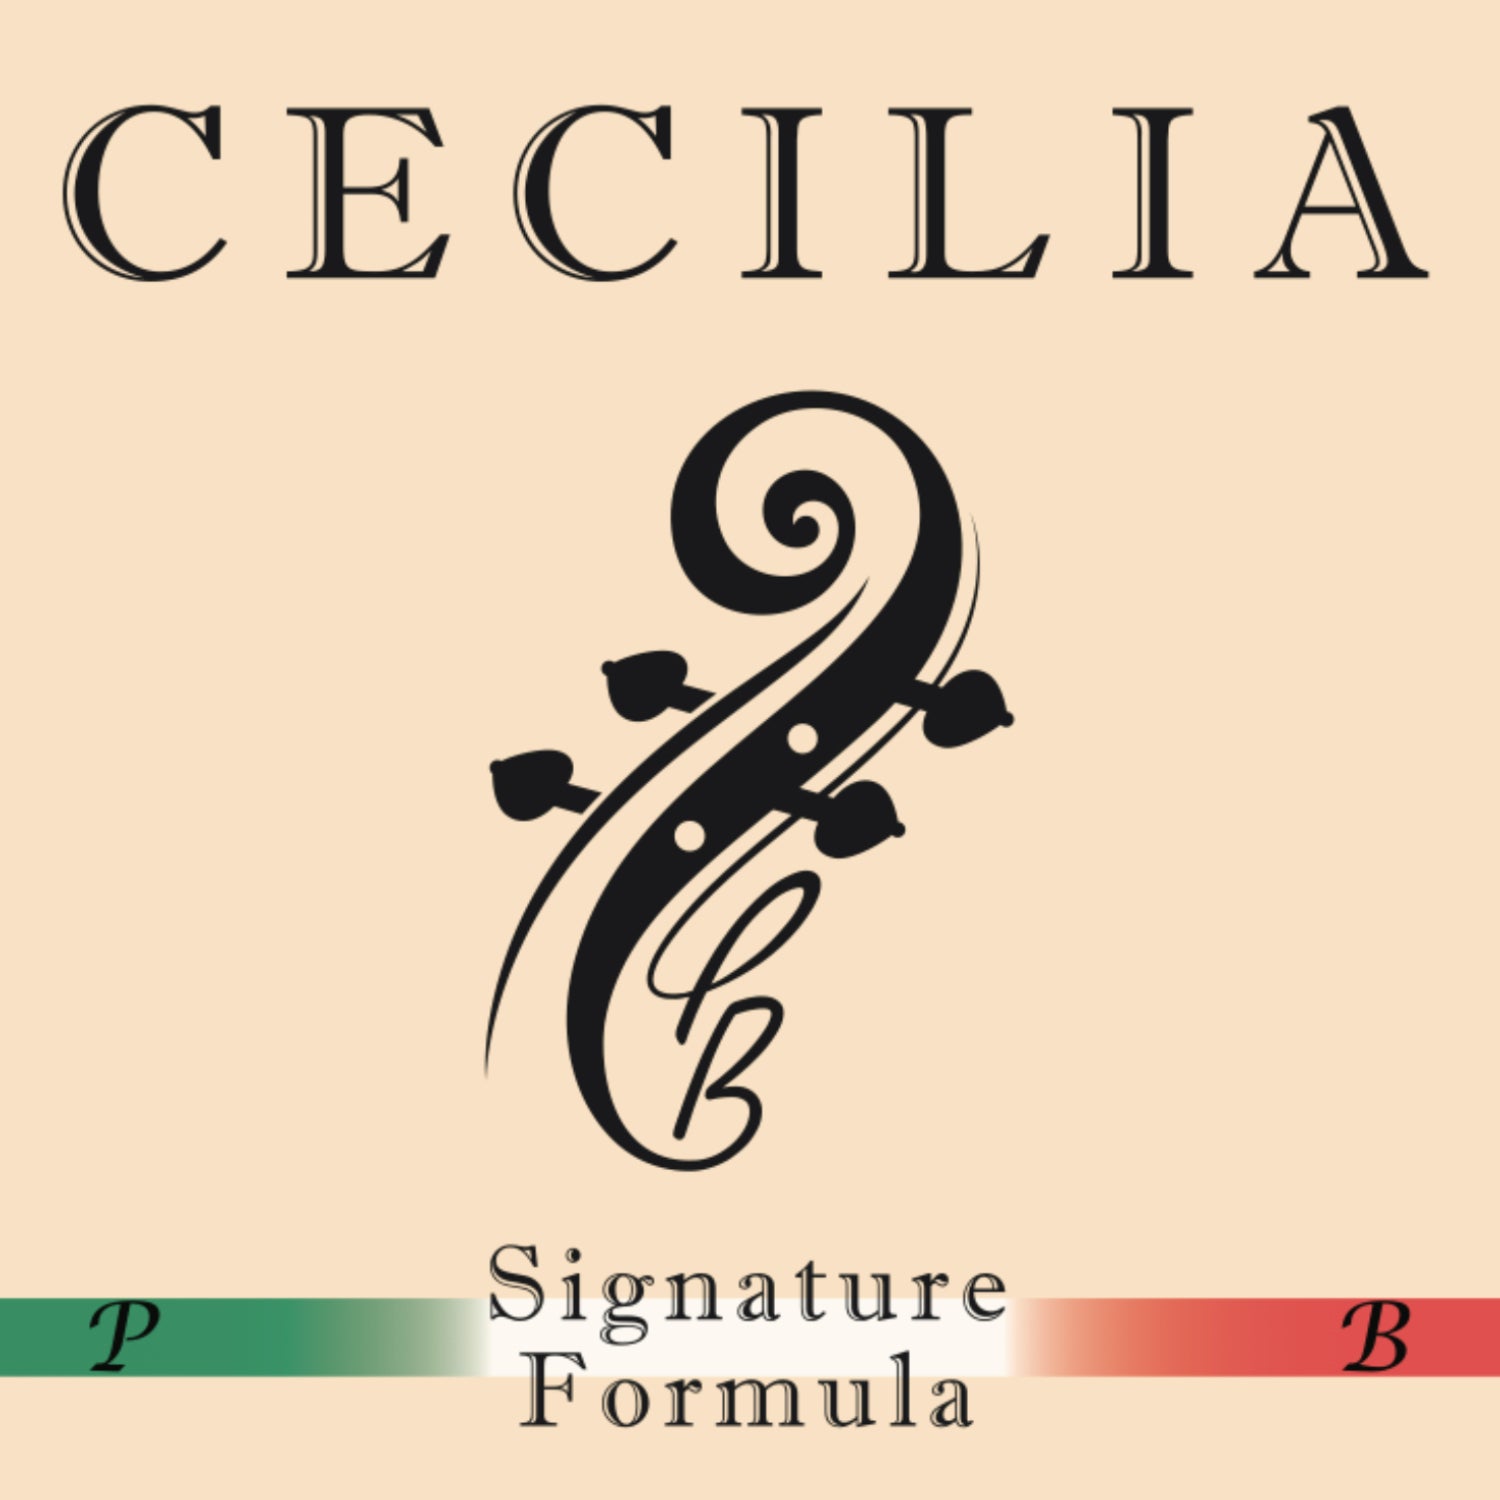 CECILIA Signature Formula Cello MINI with Spreader